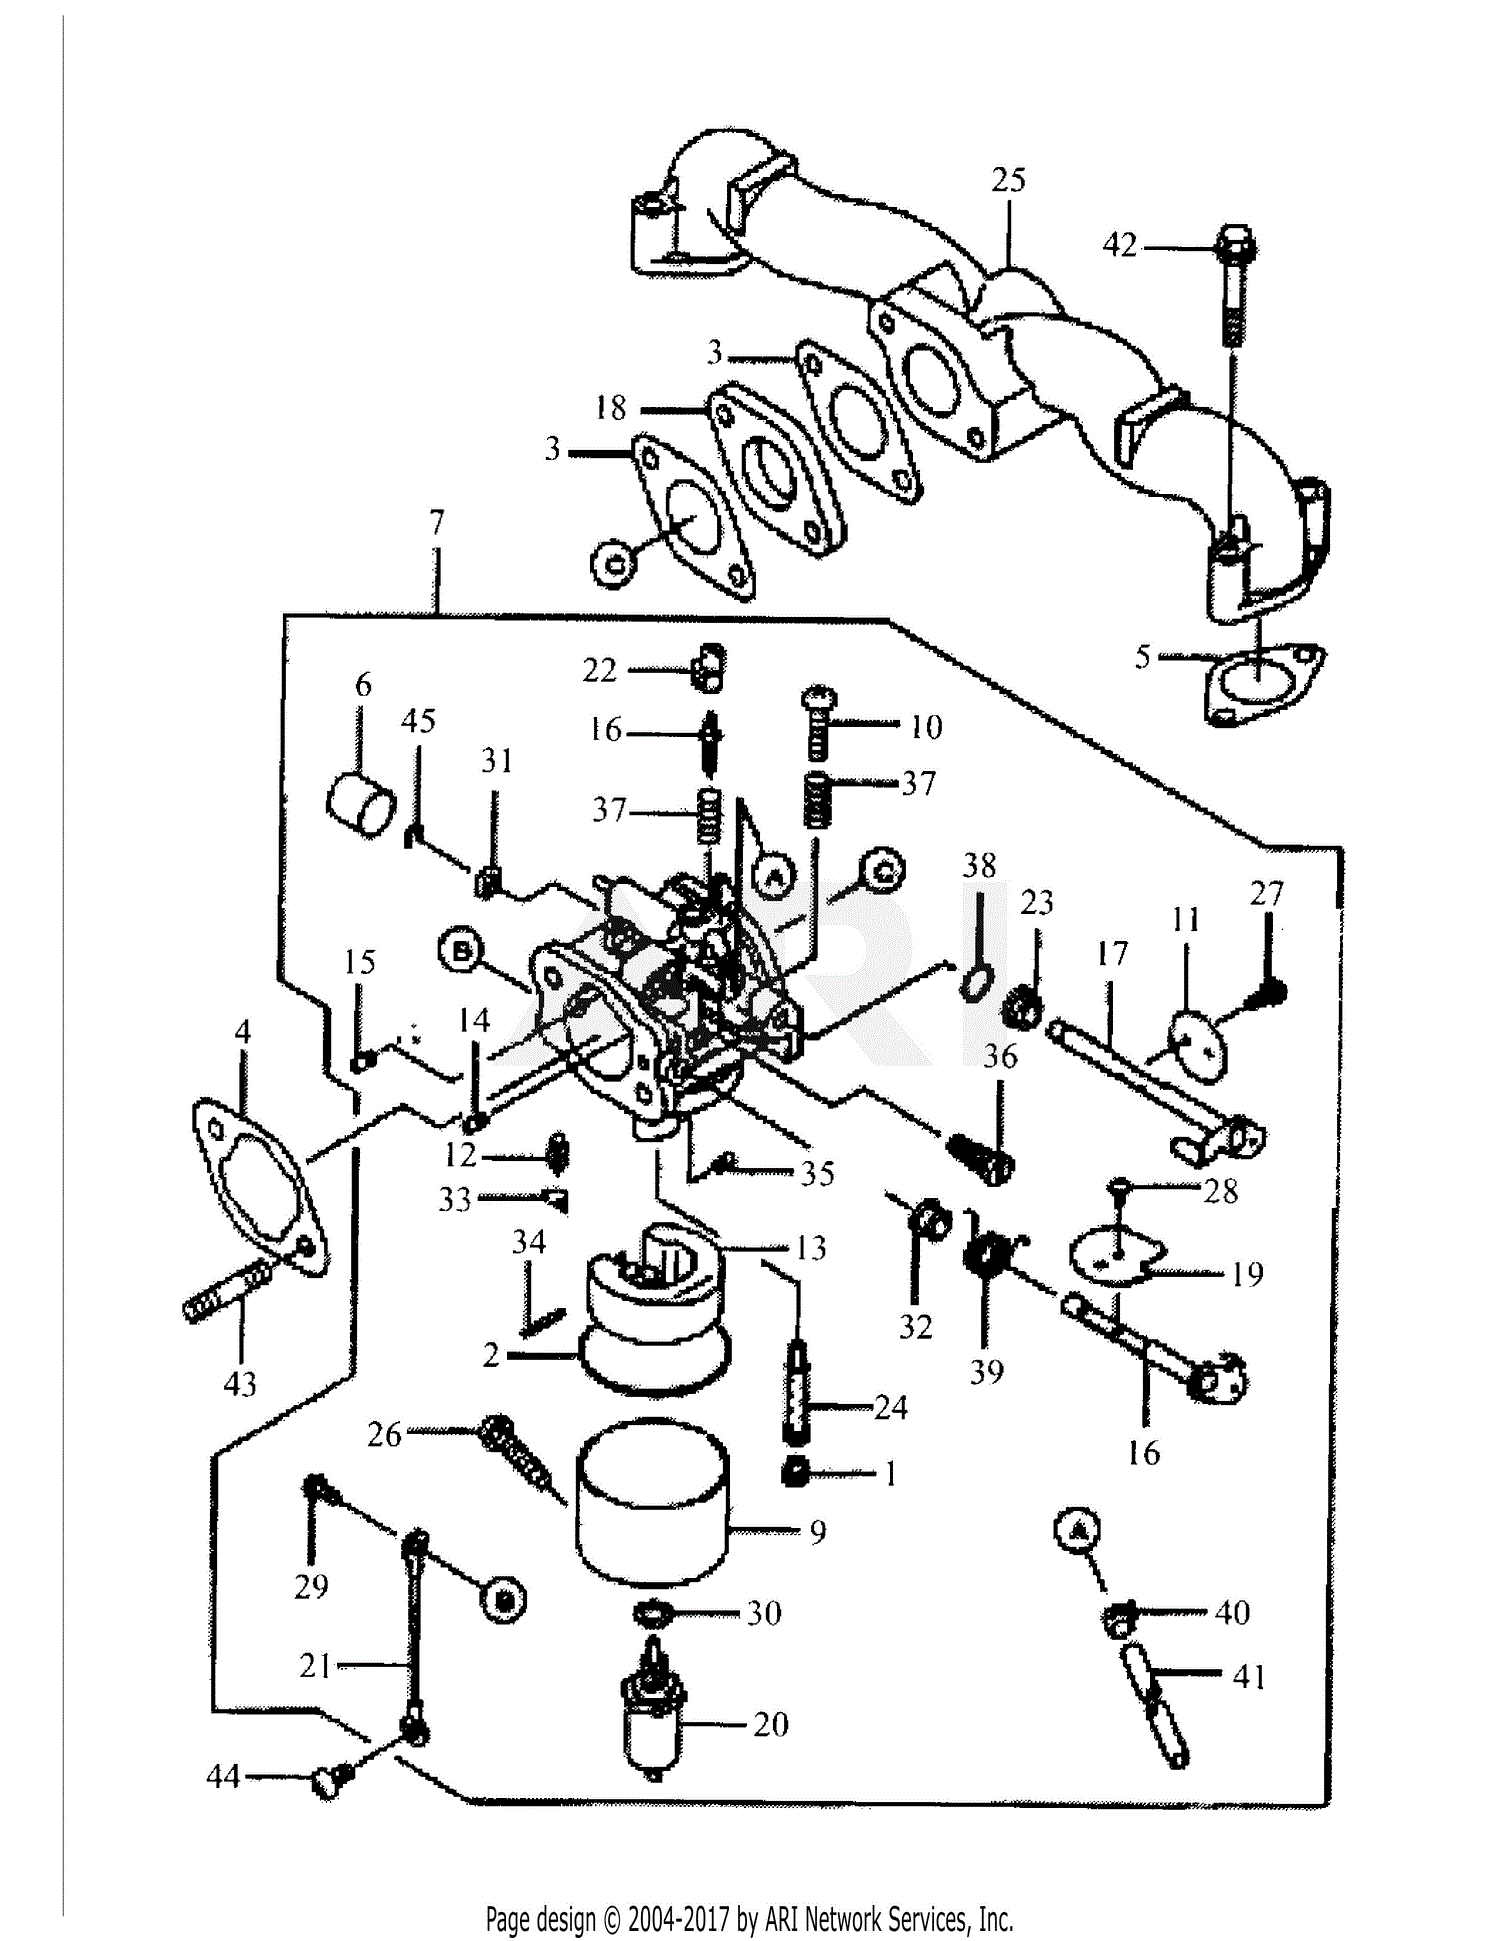 32 Cub Cadet Carburetor Diagram